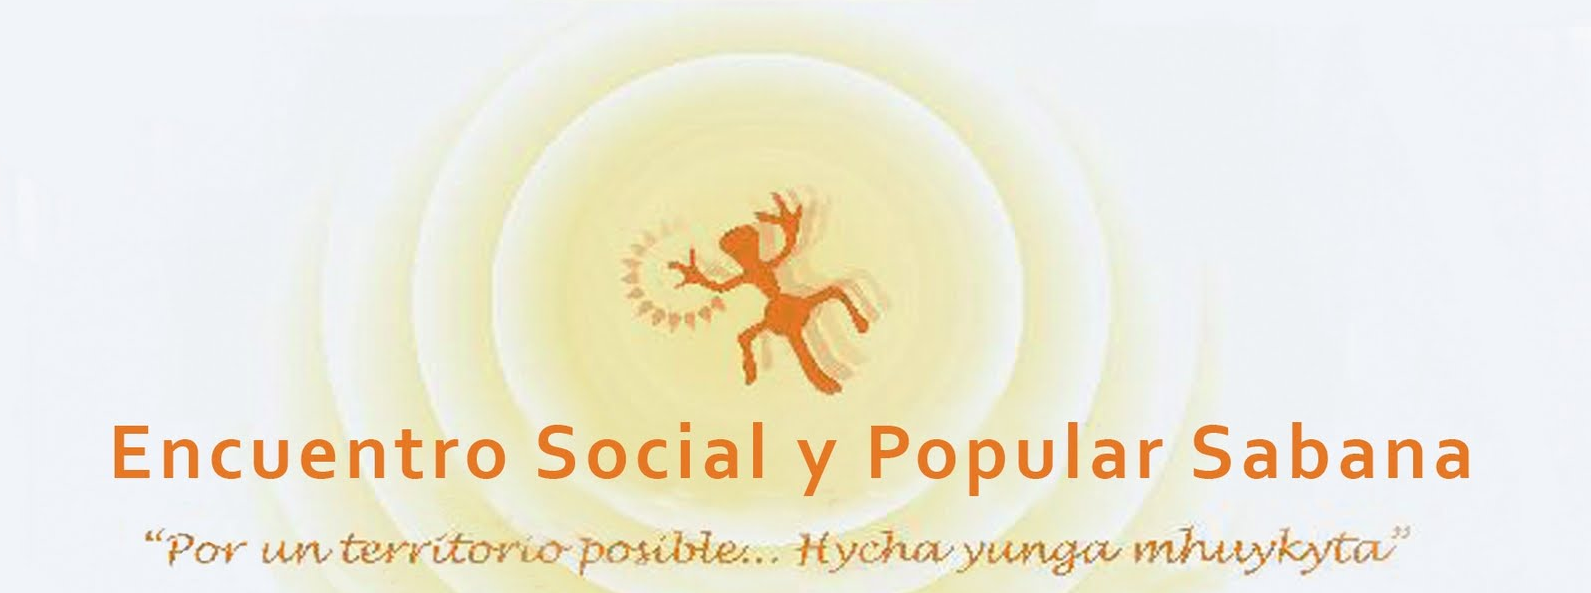 ENCUENTRO SOCIAL Y POPULAR SABANA 